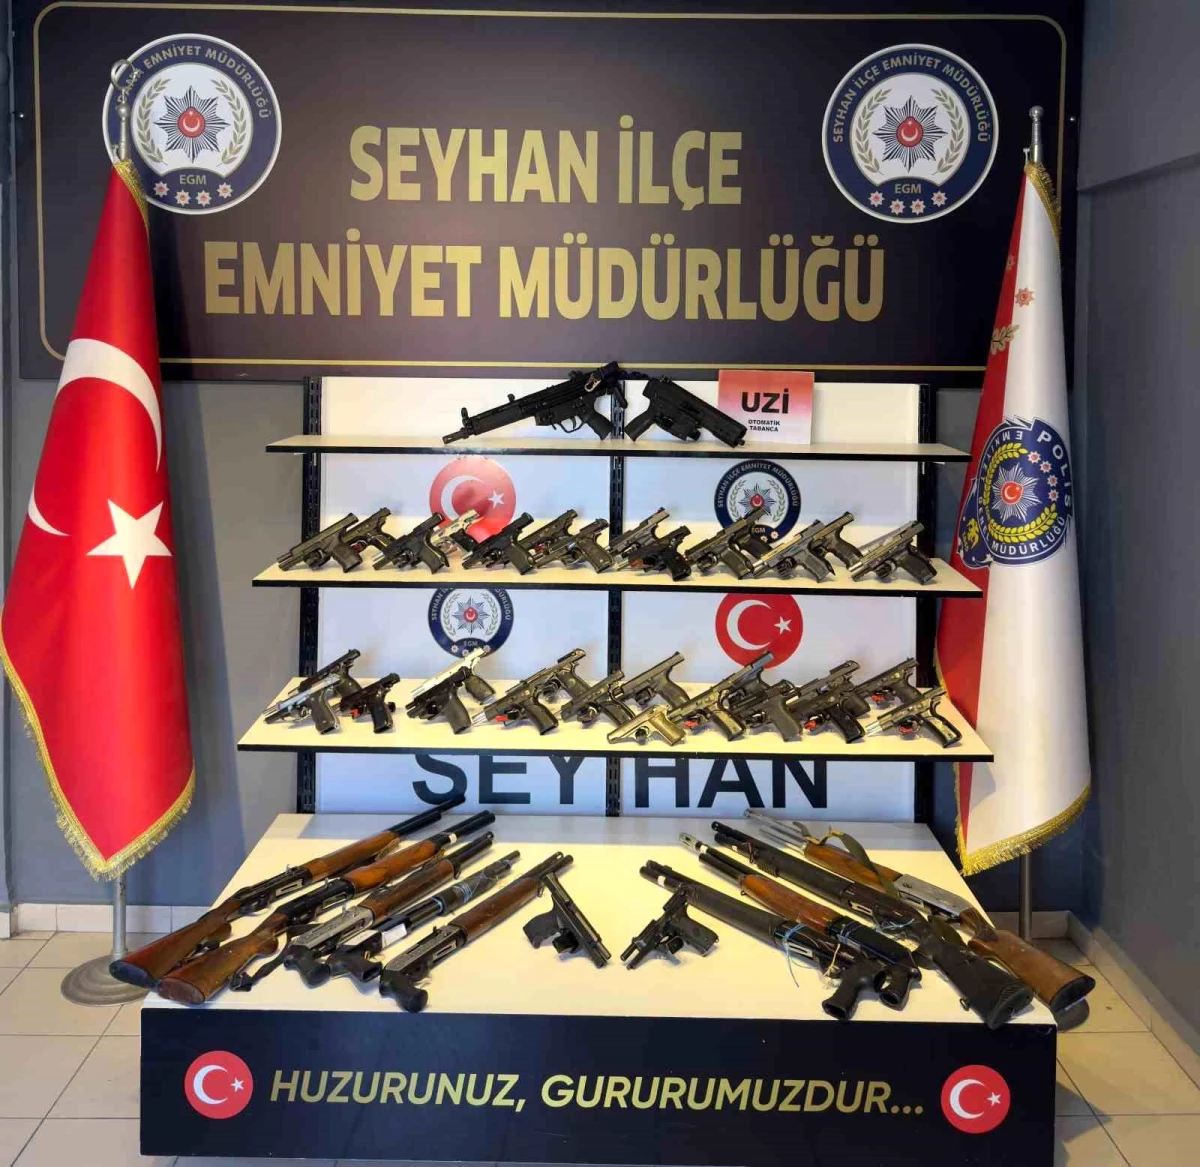 Adana’da Yapılan Uygulamalarda 34 Ruhsatsız Tabanca ve 9 Ruhsatsız Uzun Namlulu Tüfek Ele Geçirildi